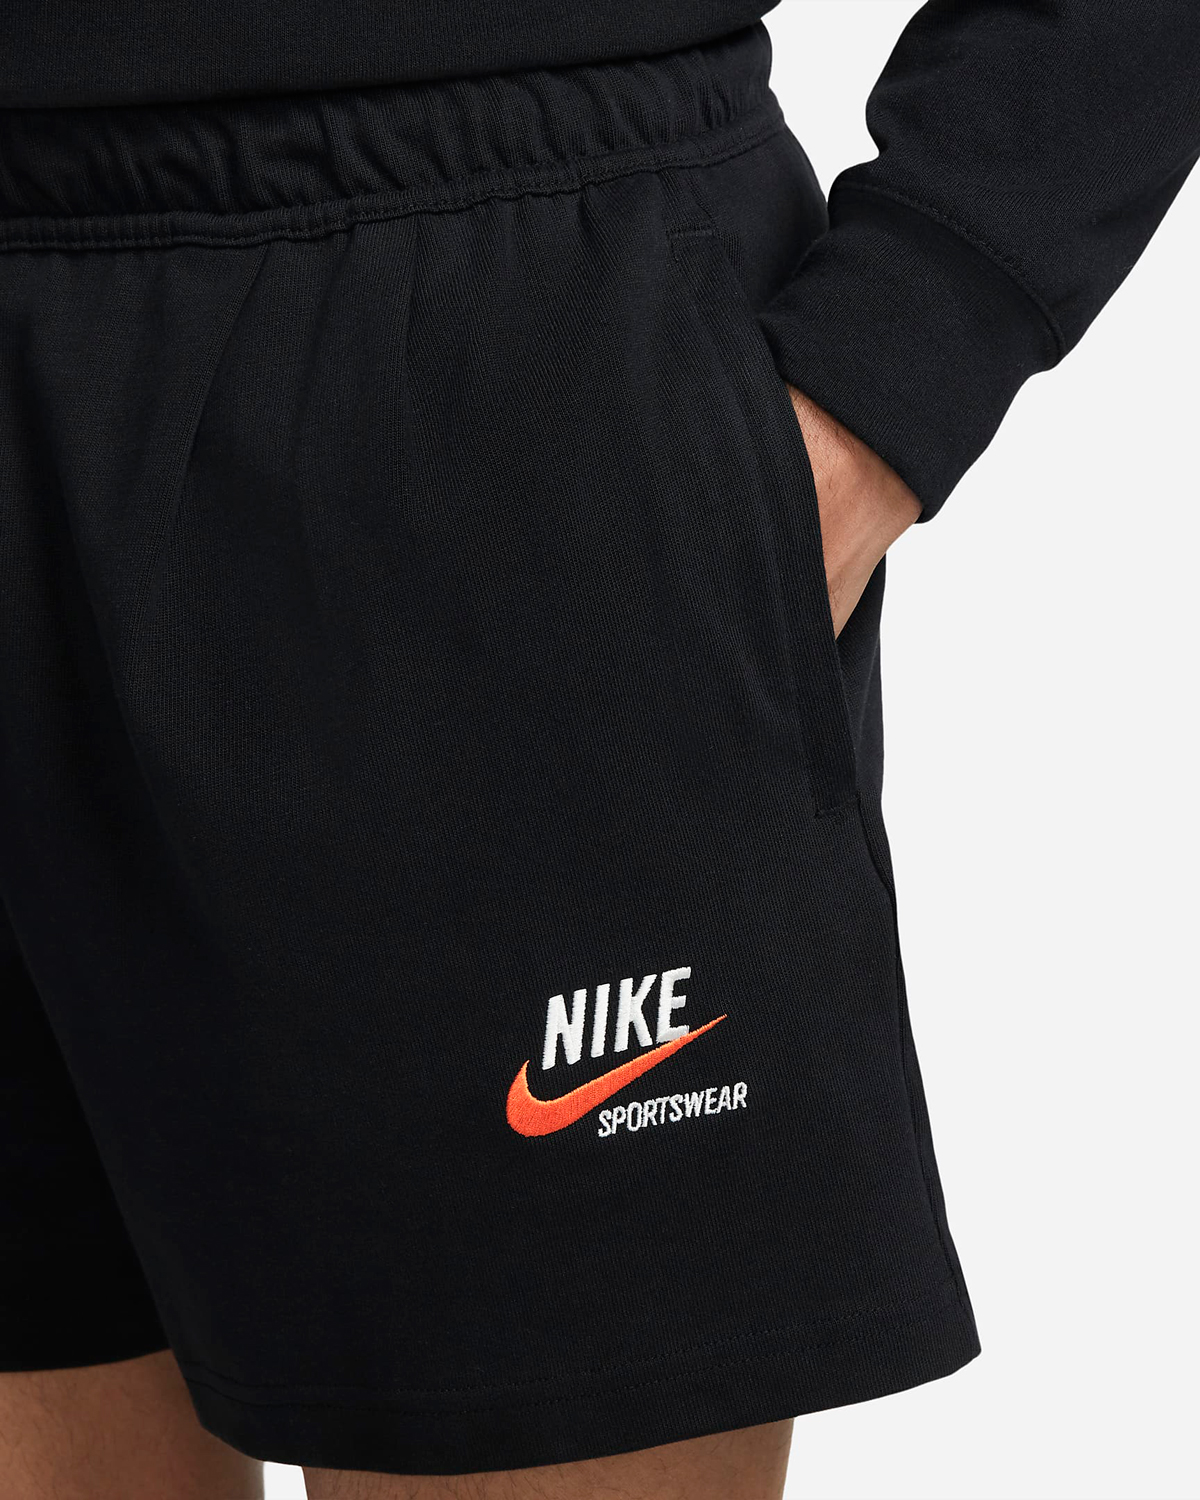 Nike-Sportswear-Trend-Shorts-Black-Orange